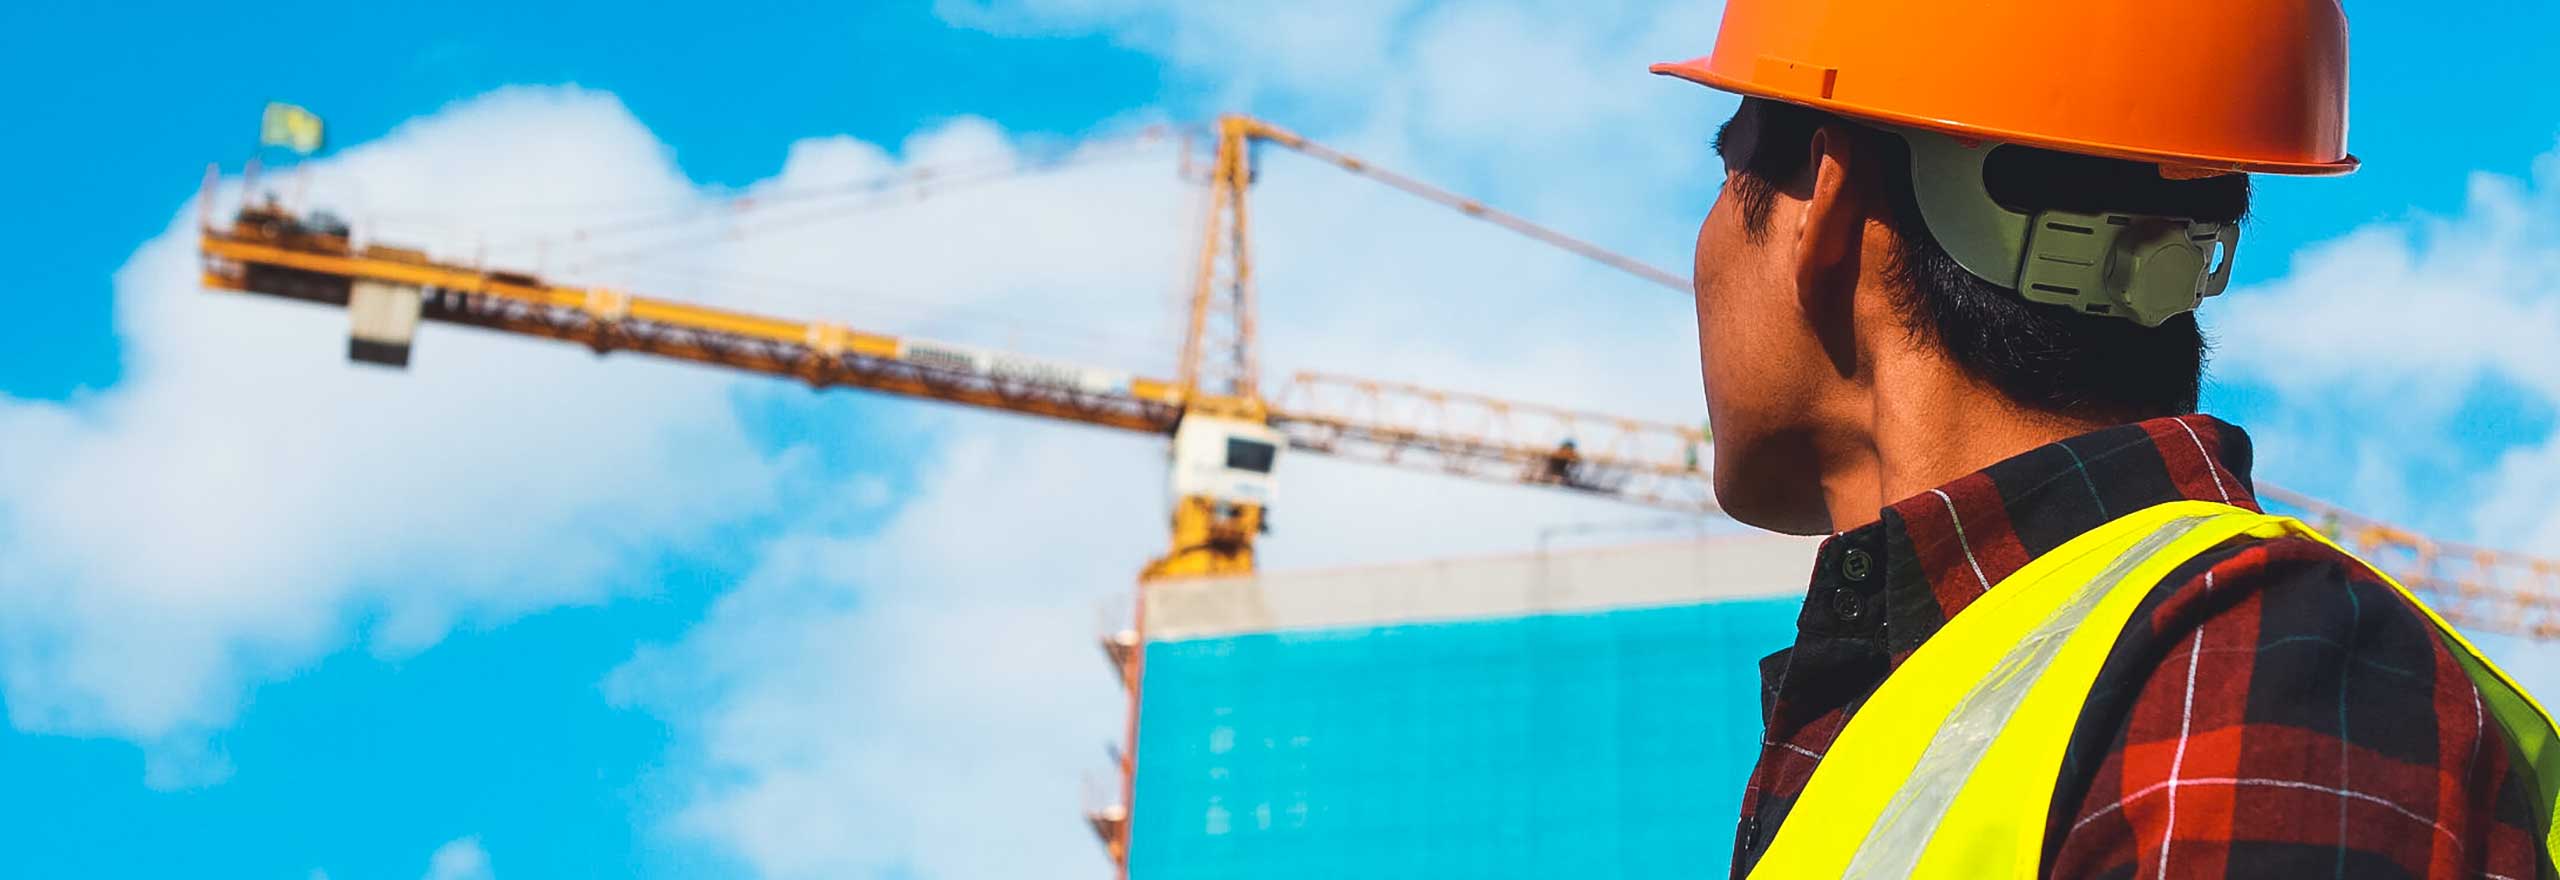 Un trabajador de la construcción mira hacia una grúa